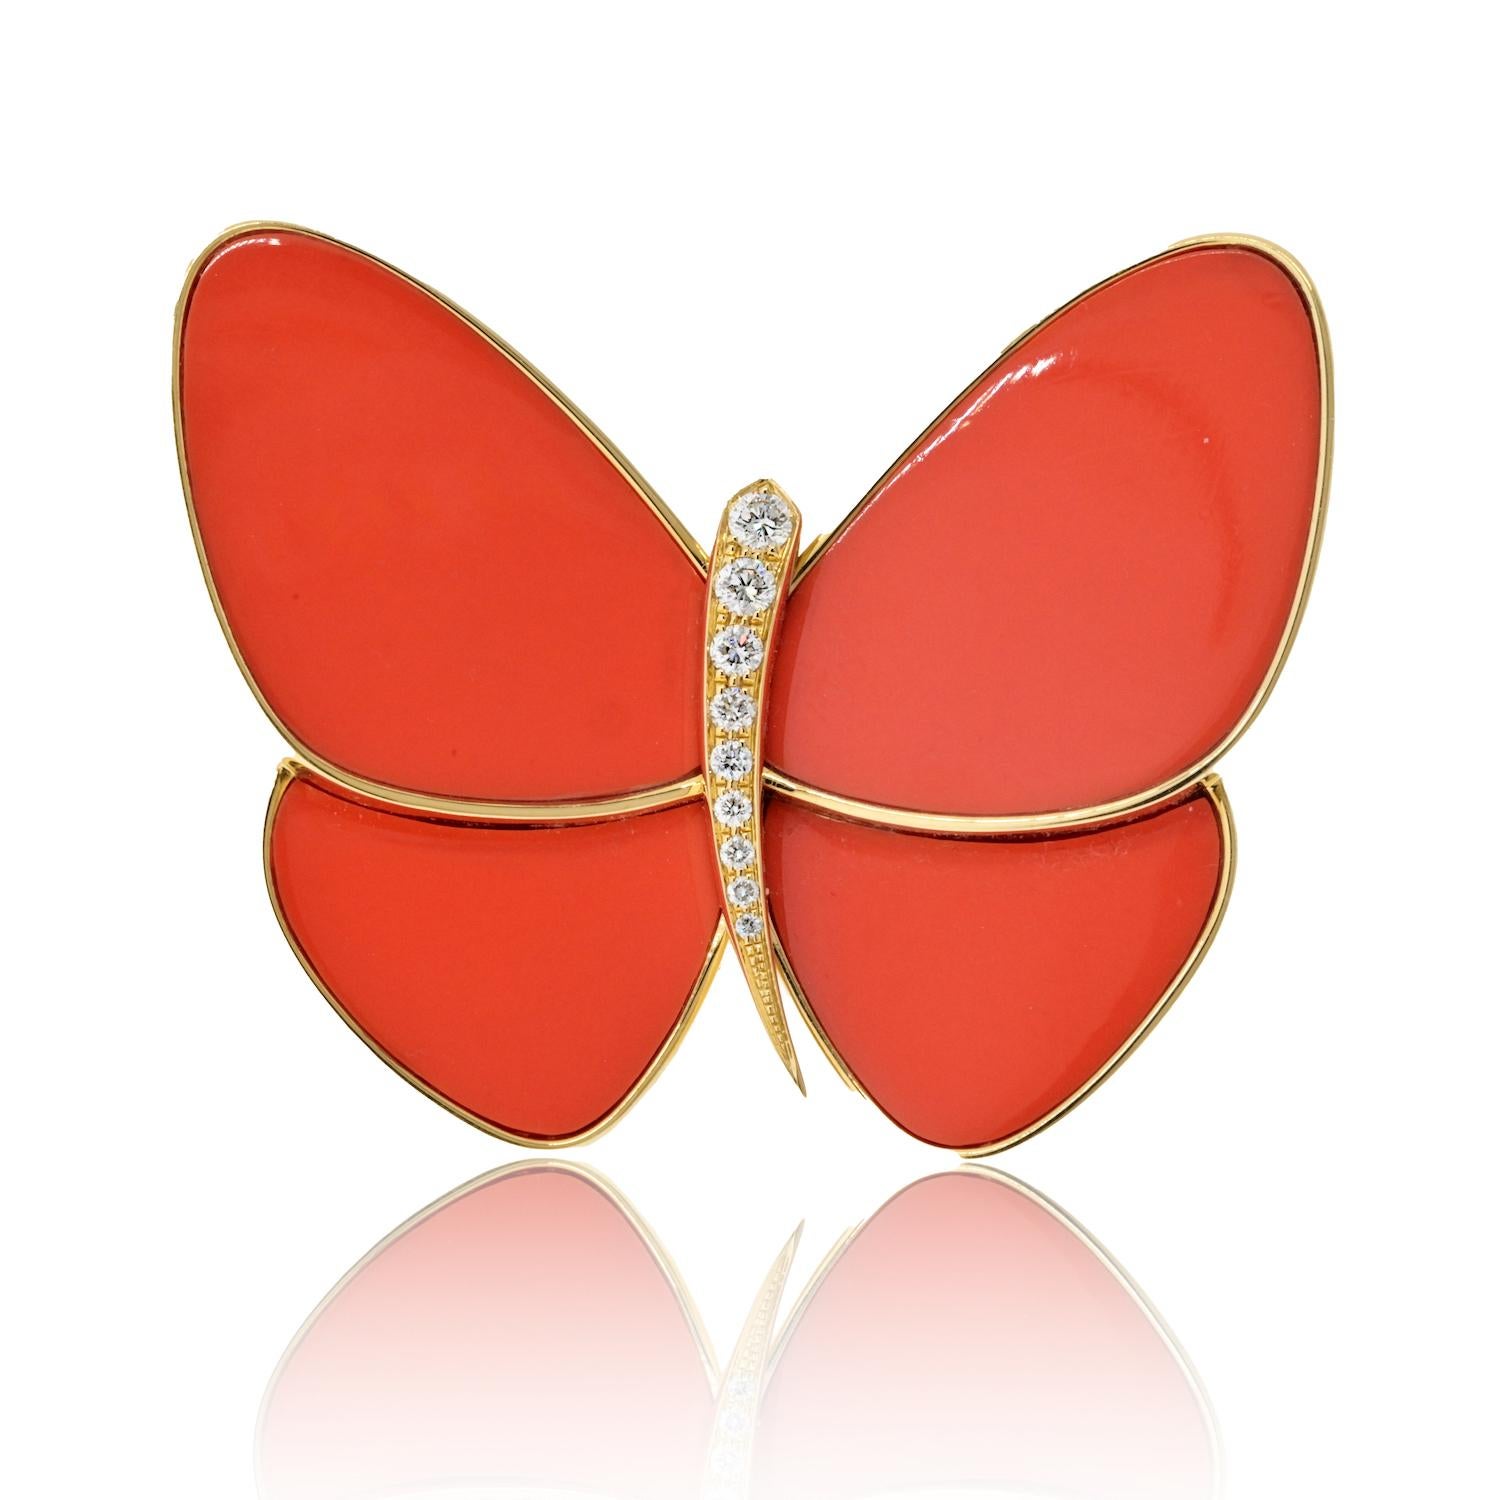 Van Cleef & Arpels präsentiert eine faszinierende Kreation: einen stilisierten Schmetterling mit exquisiten Flügeln aus Koralleneinlagen. Die Flügel, ein satter, undurchsichtiger, mittelrötlich-oranger Farbton, bestechen durch ihre lebendige Farbe.